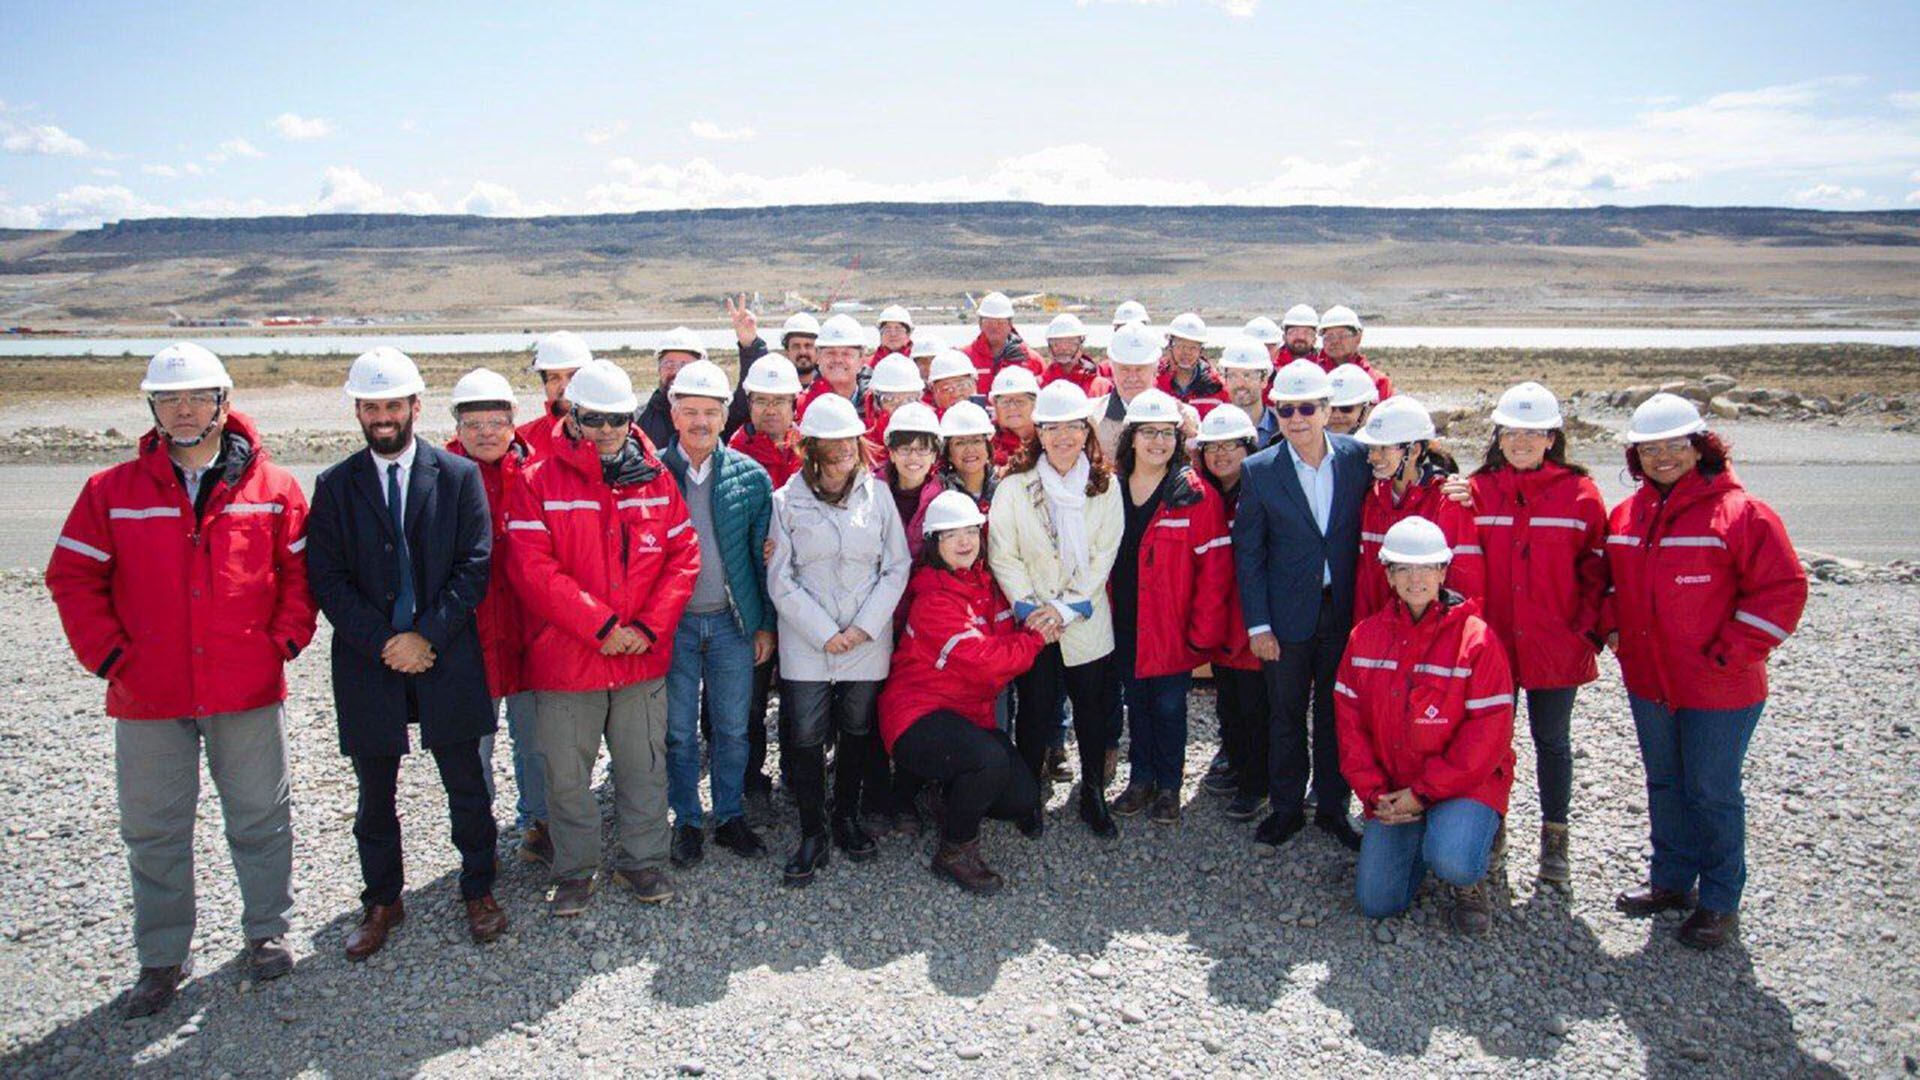 La vicepresidente Cristina Kirchner, en una visita a la obra de represas en Santa Cruz, la inversión más abultada que se está realizando con crédito chino